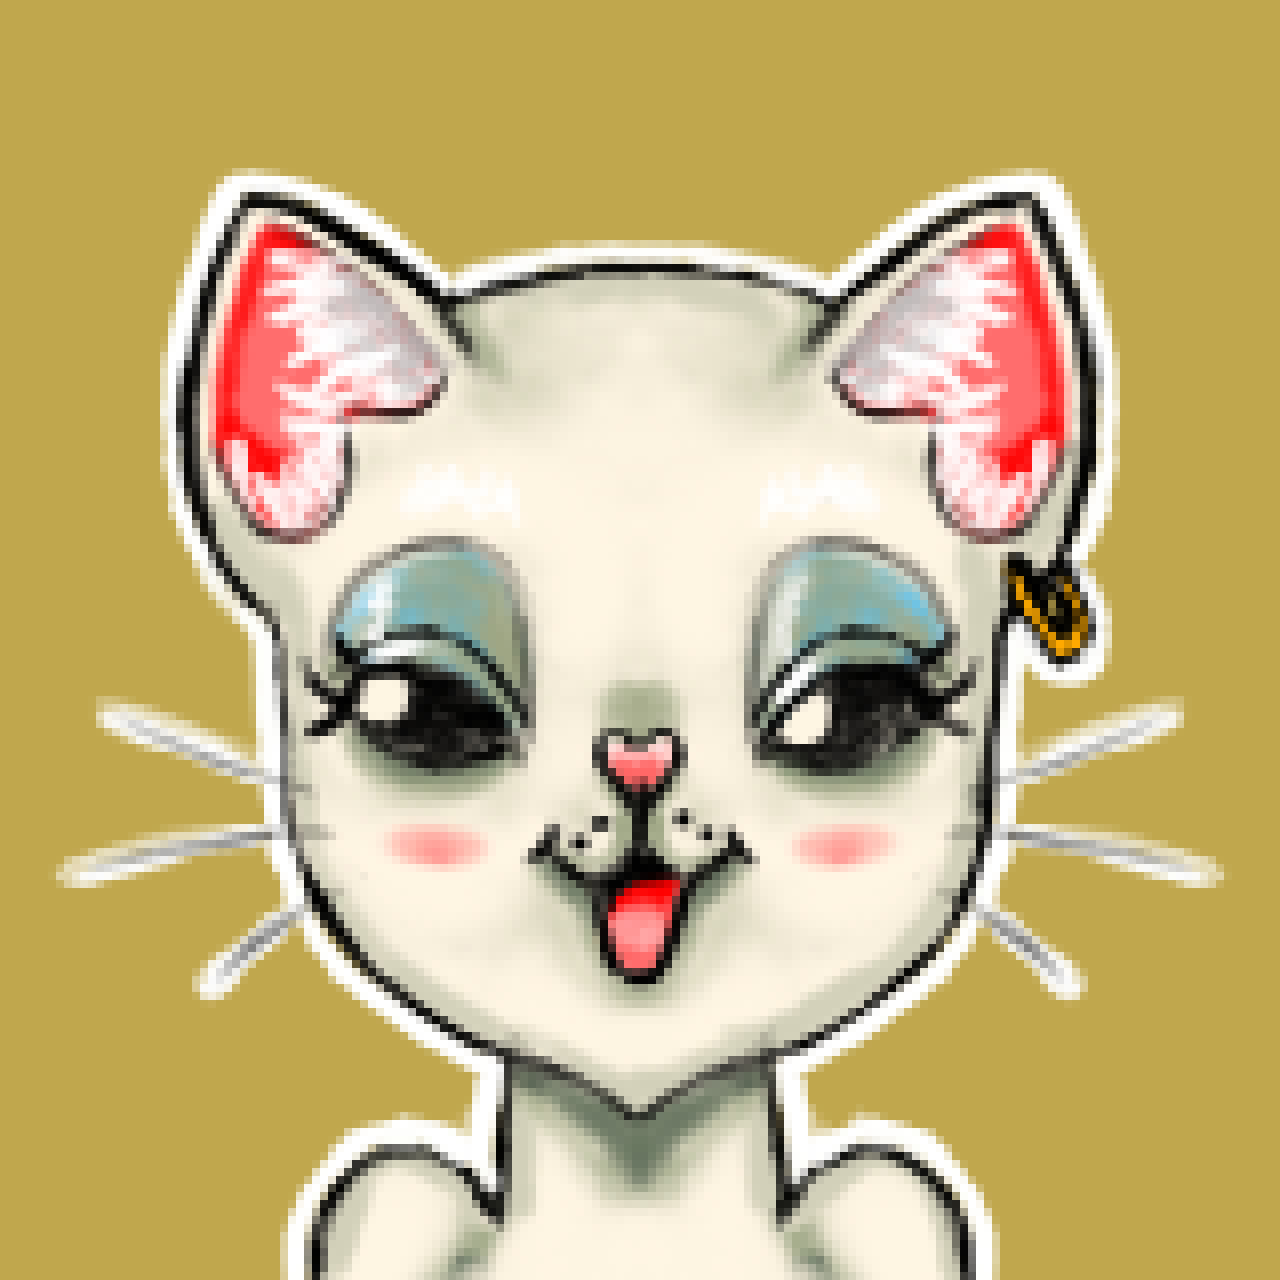 drawing of stylized cat wearing earring